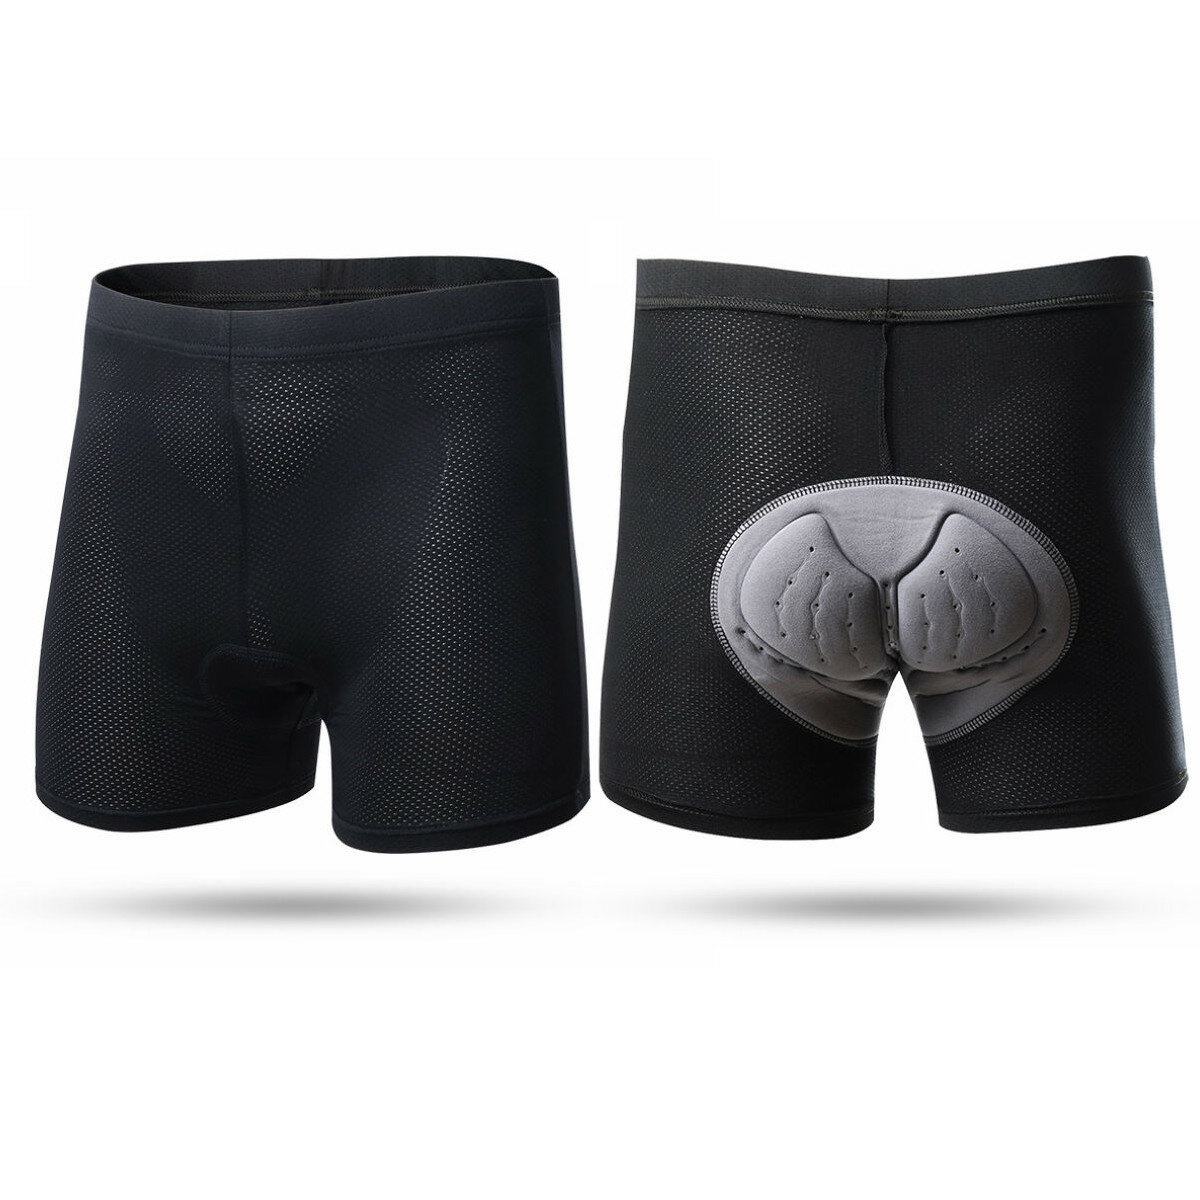 ทีม XINTOWN ผู้ชาย 3D Coolmax Padded Comfort Breathable Riding Bicycle Underpants Ciclismo Cycling Shorts Underwear Undershorts.